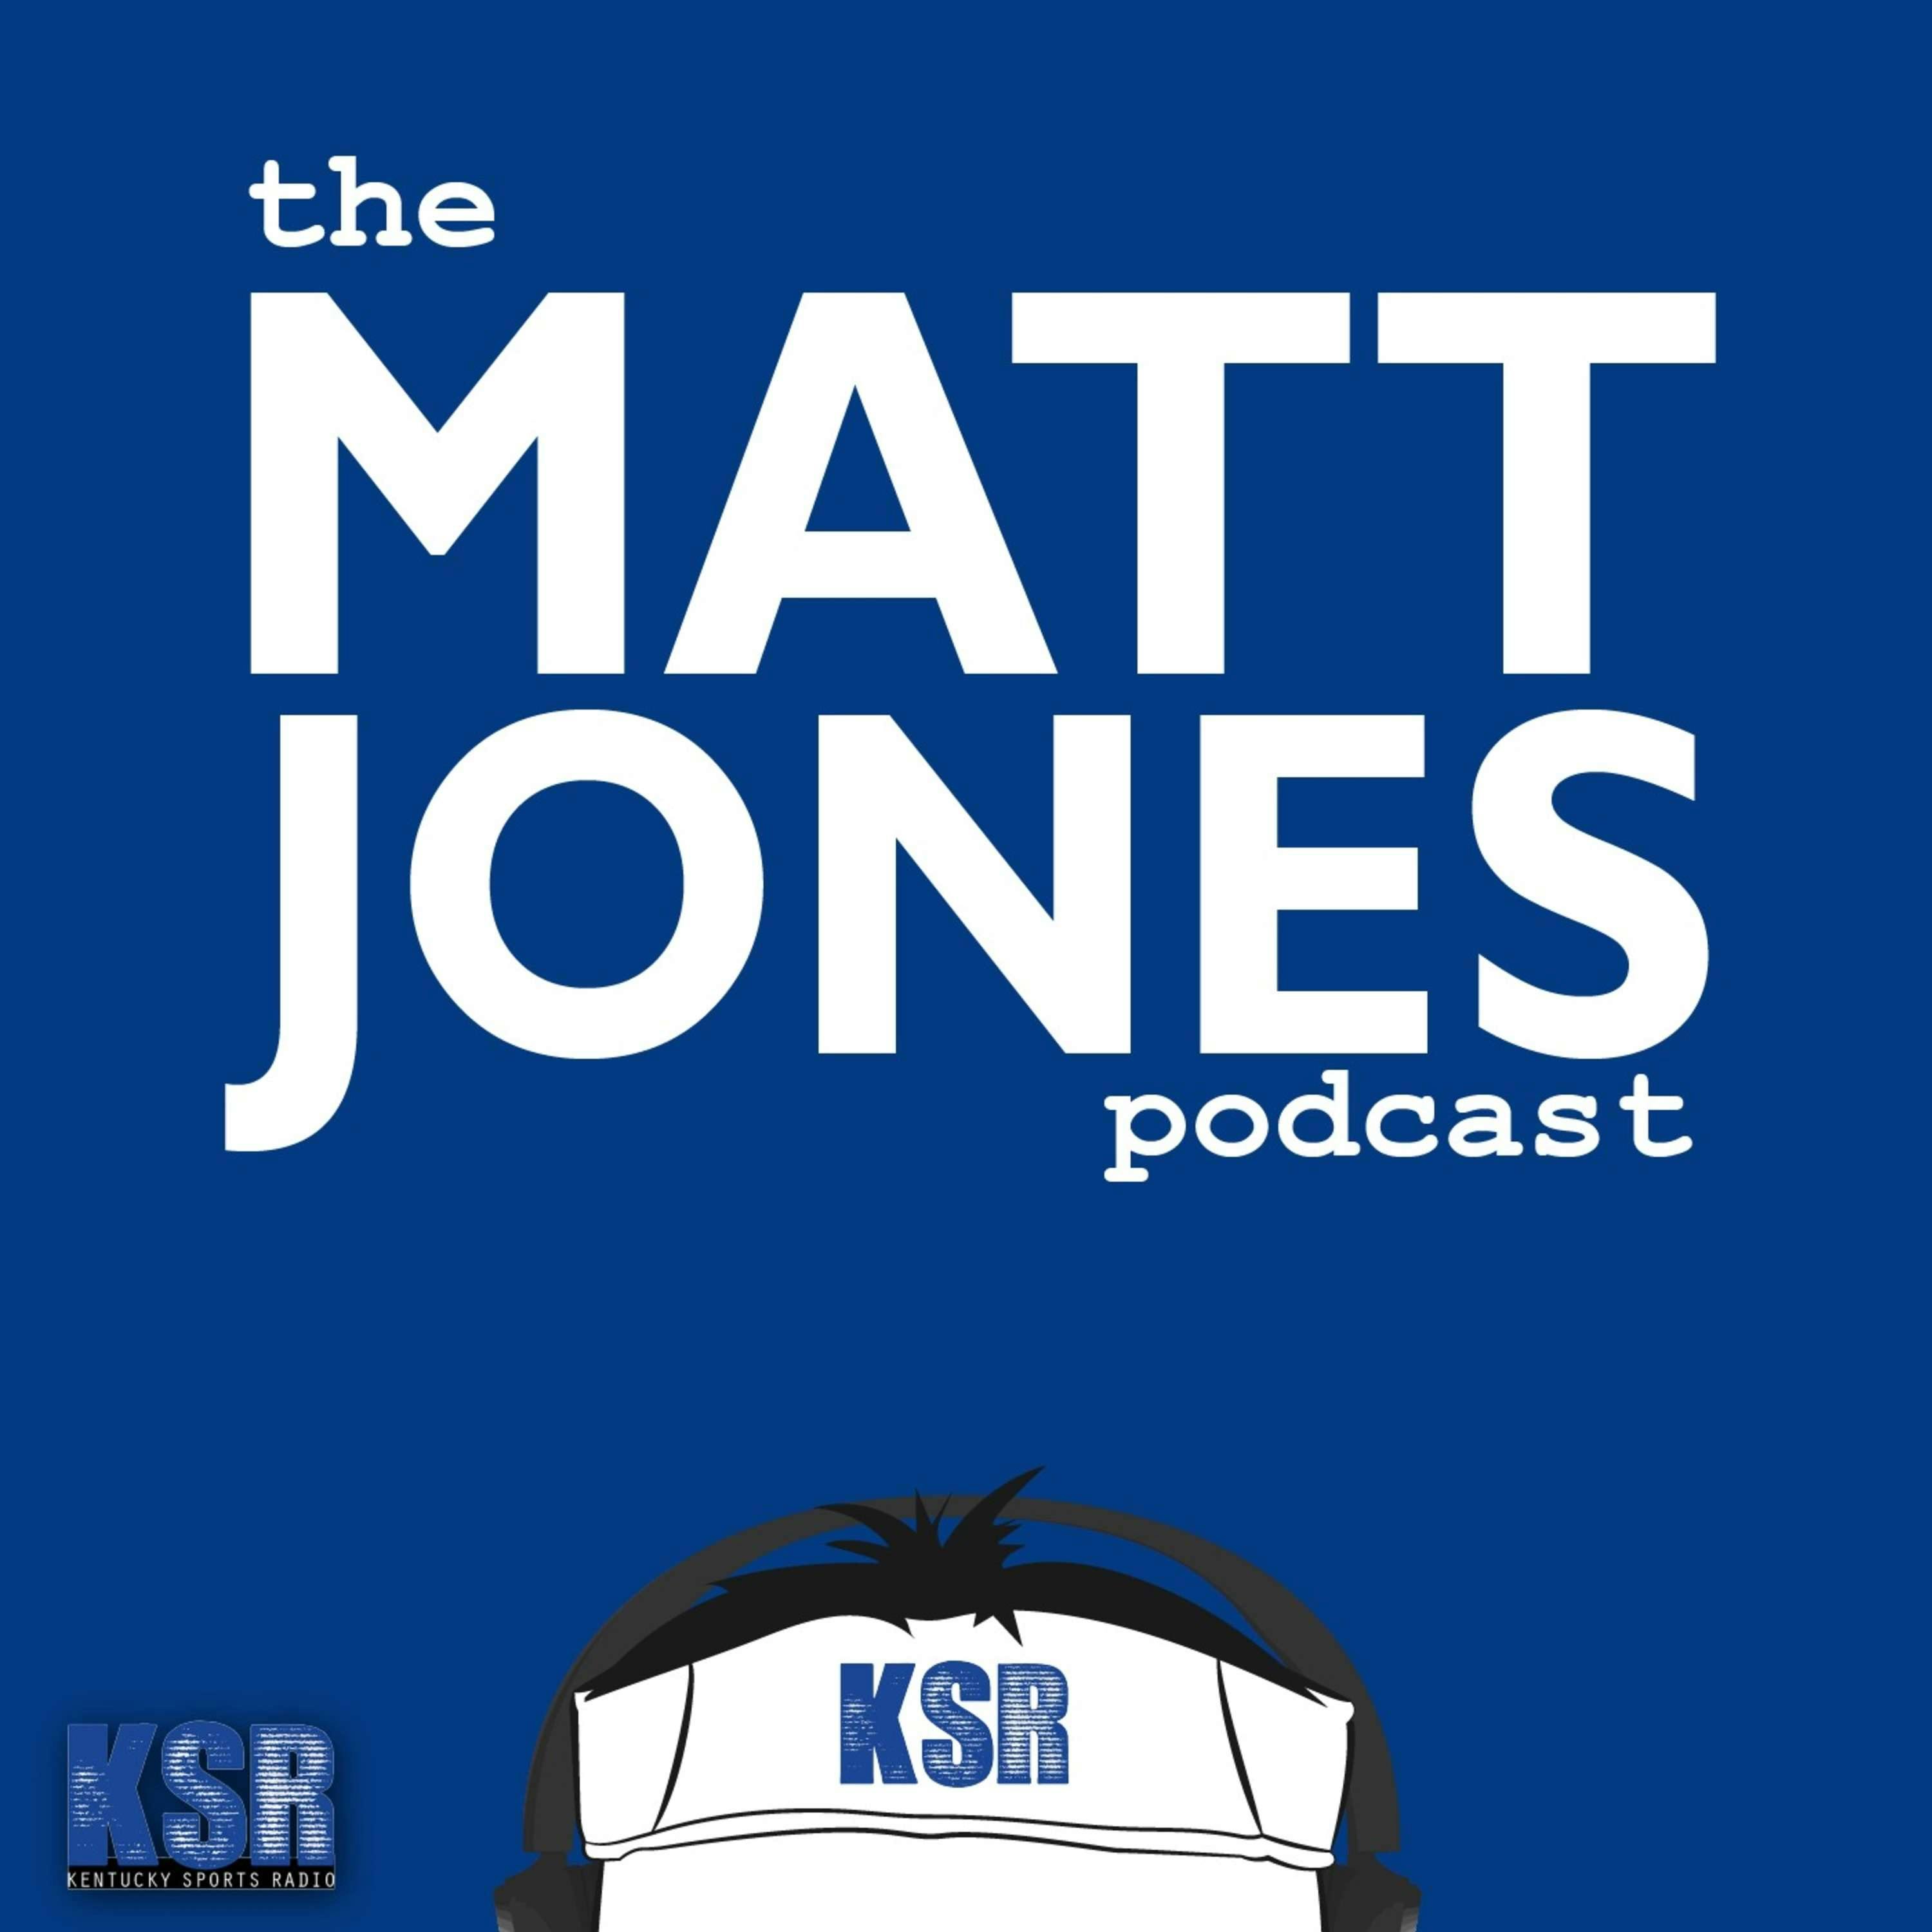 The Matt Jones Podcast: E60 Doug Gottlieb